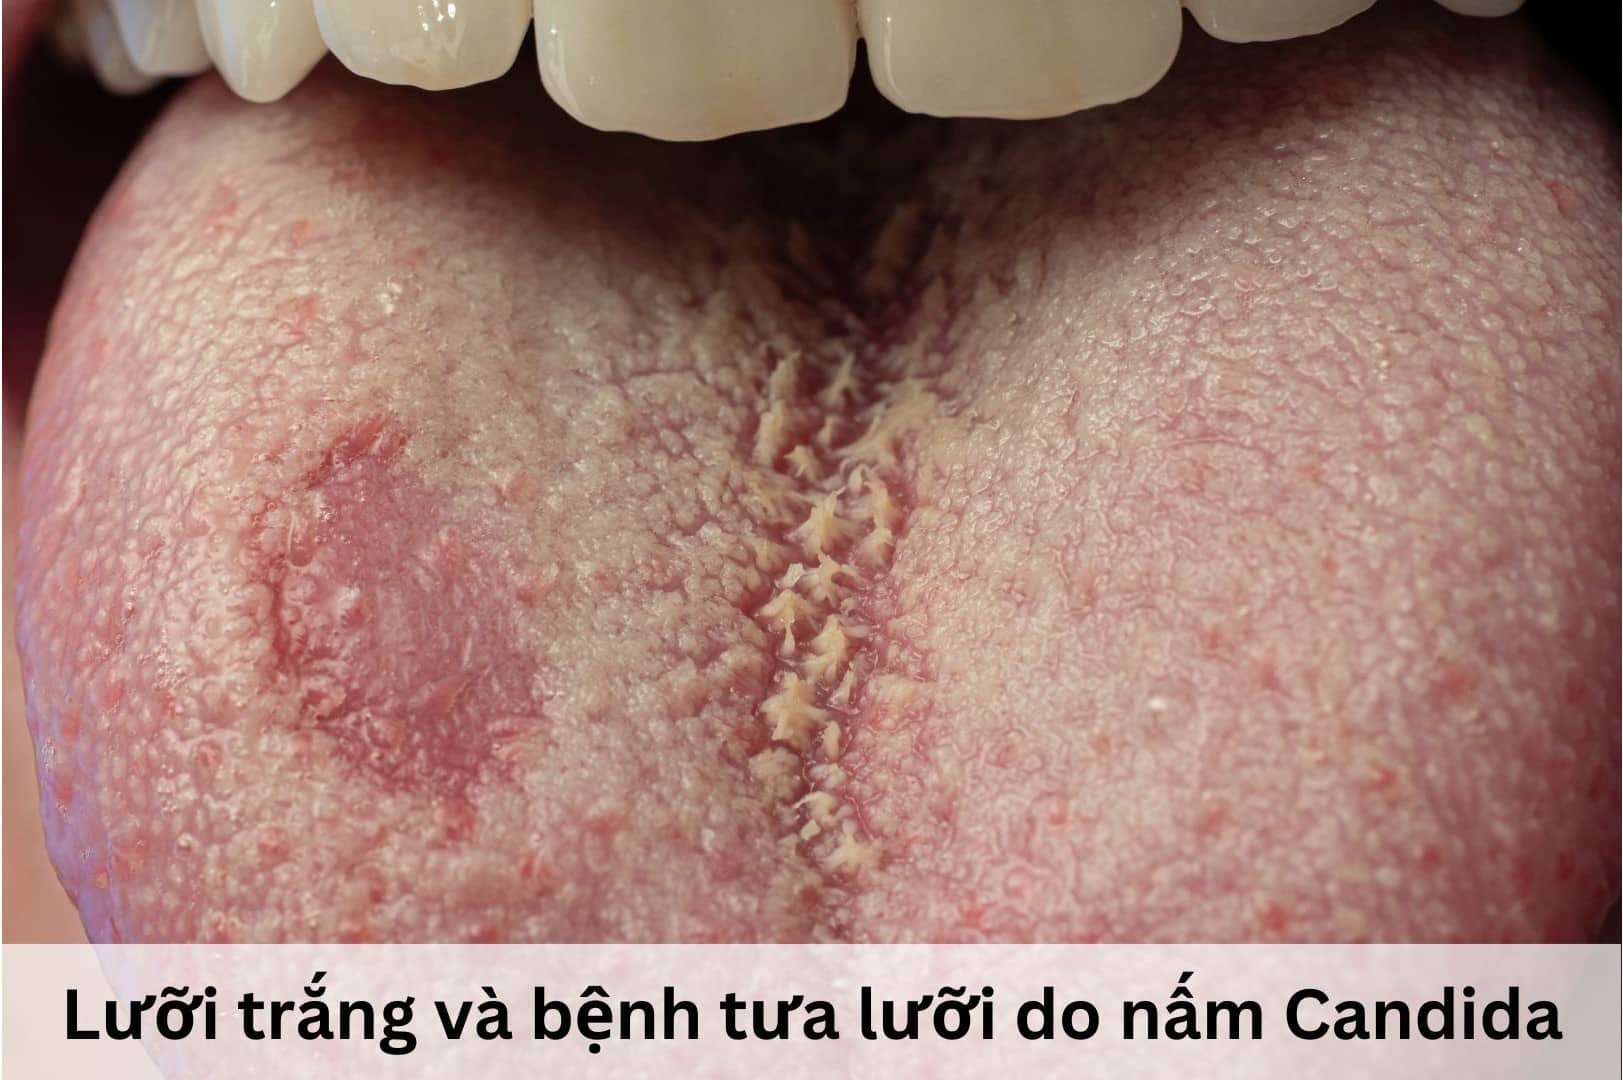 Dấu hiệu lưỡi trắng và nhiễm nấm Candida